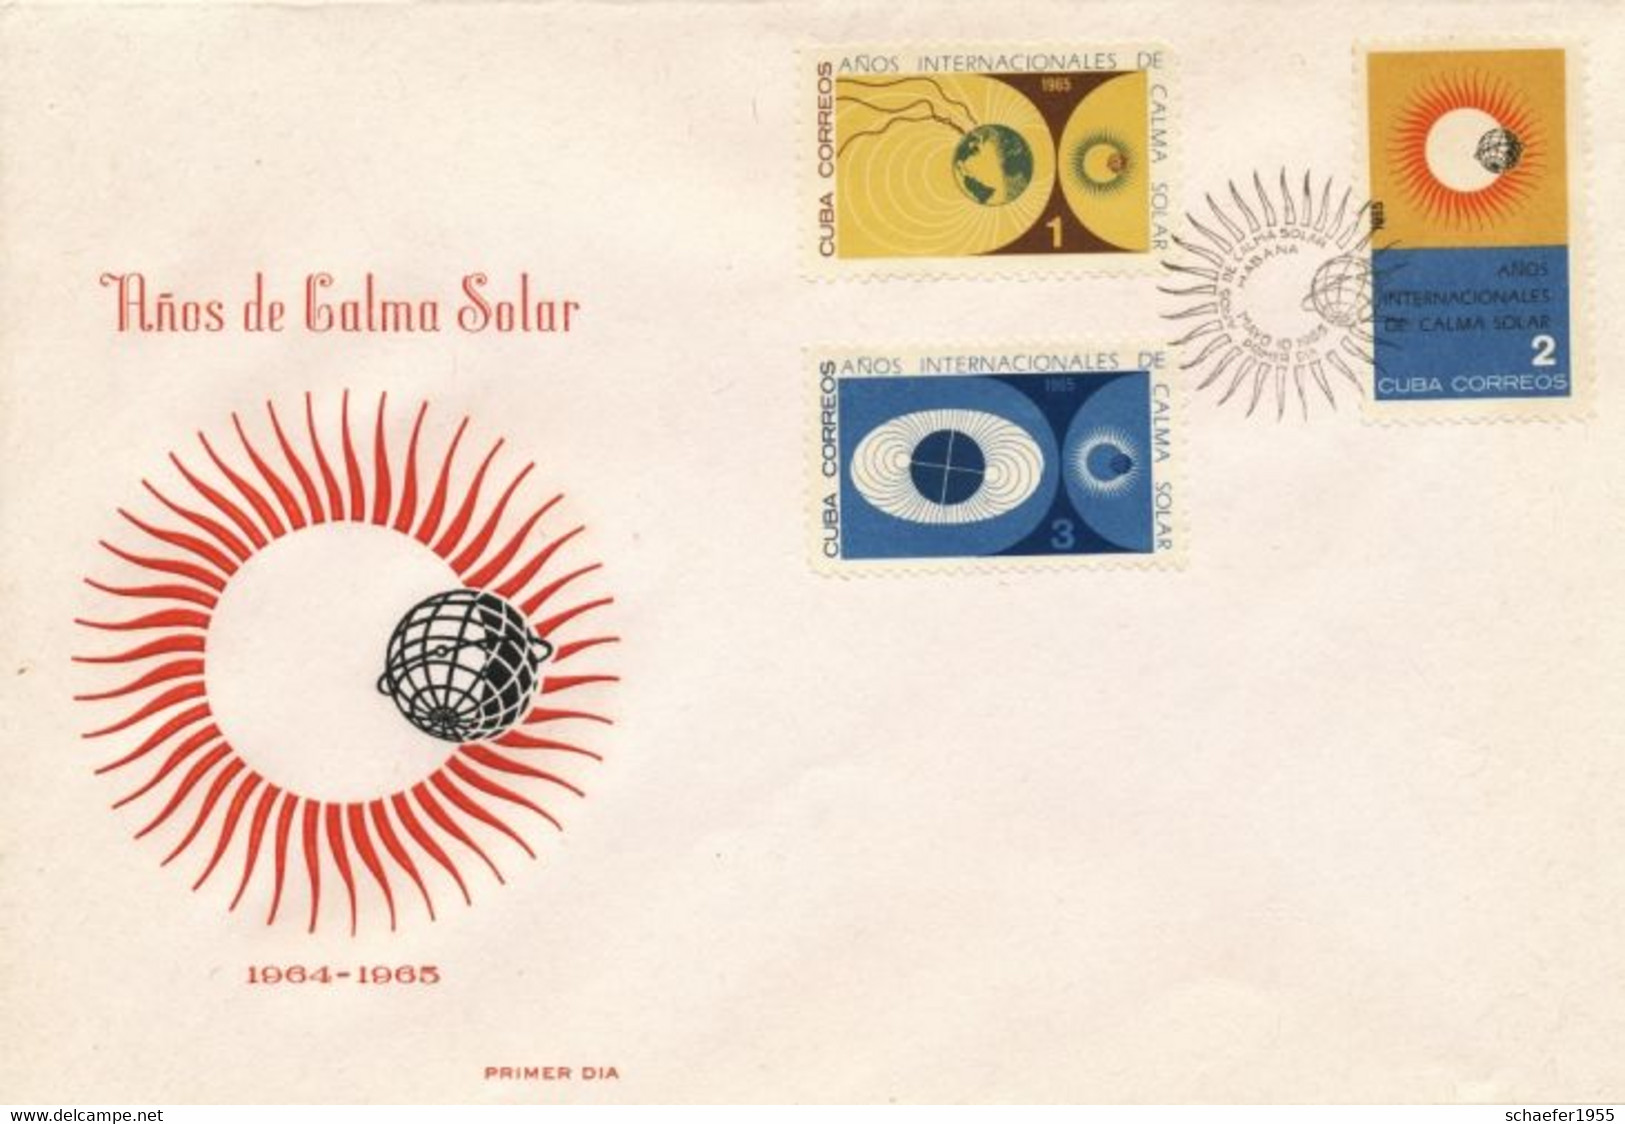 Cuba, Kuba 1965 Calma Solar 2x FDC + Stamps - America Del Nord